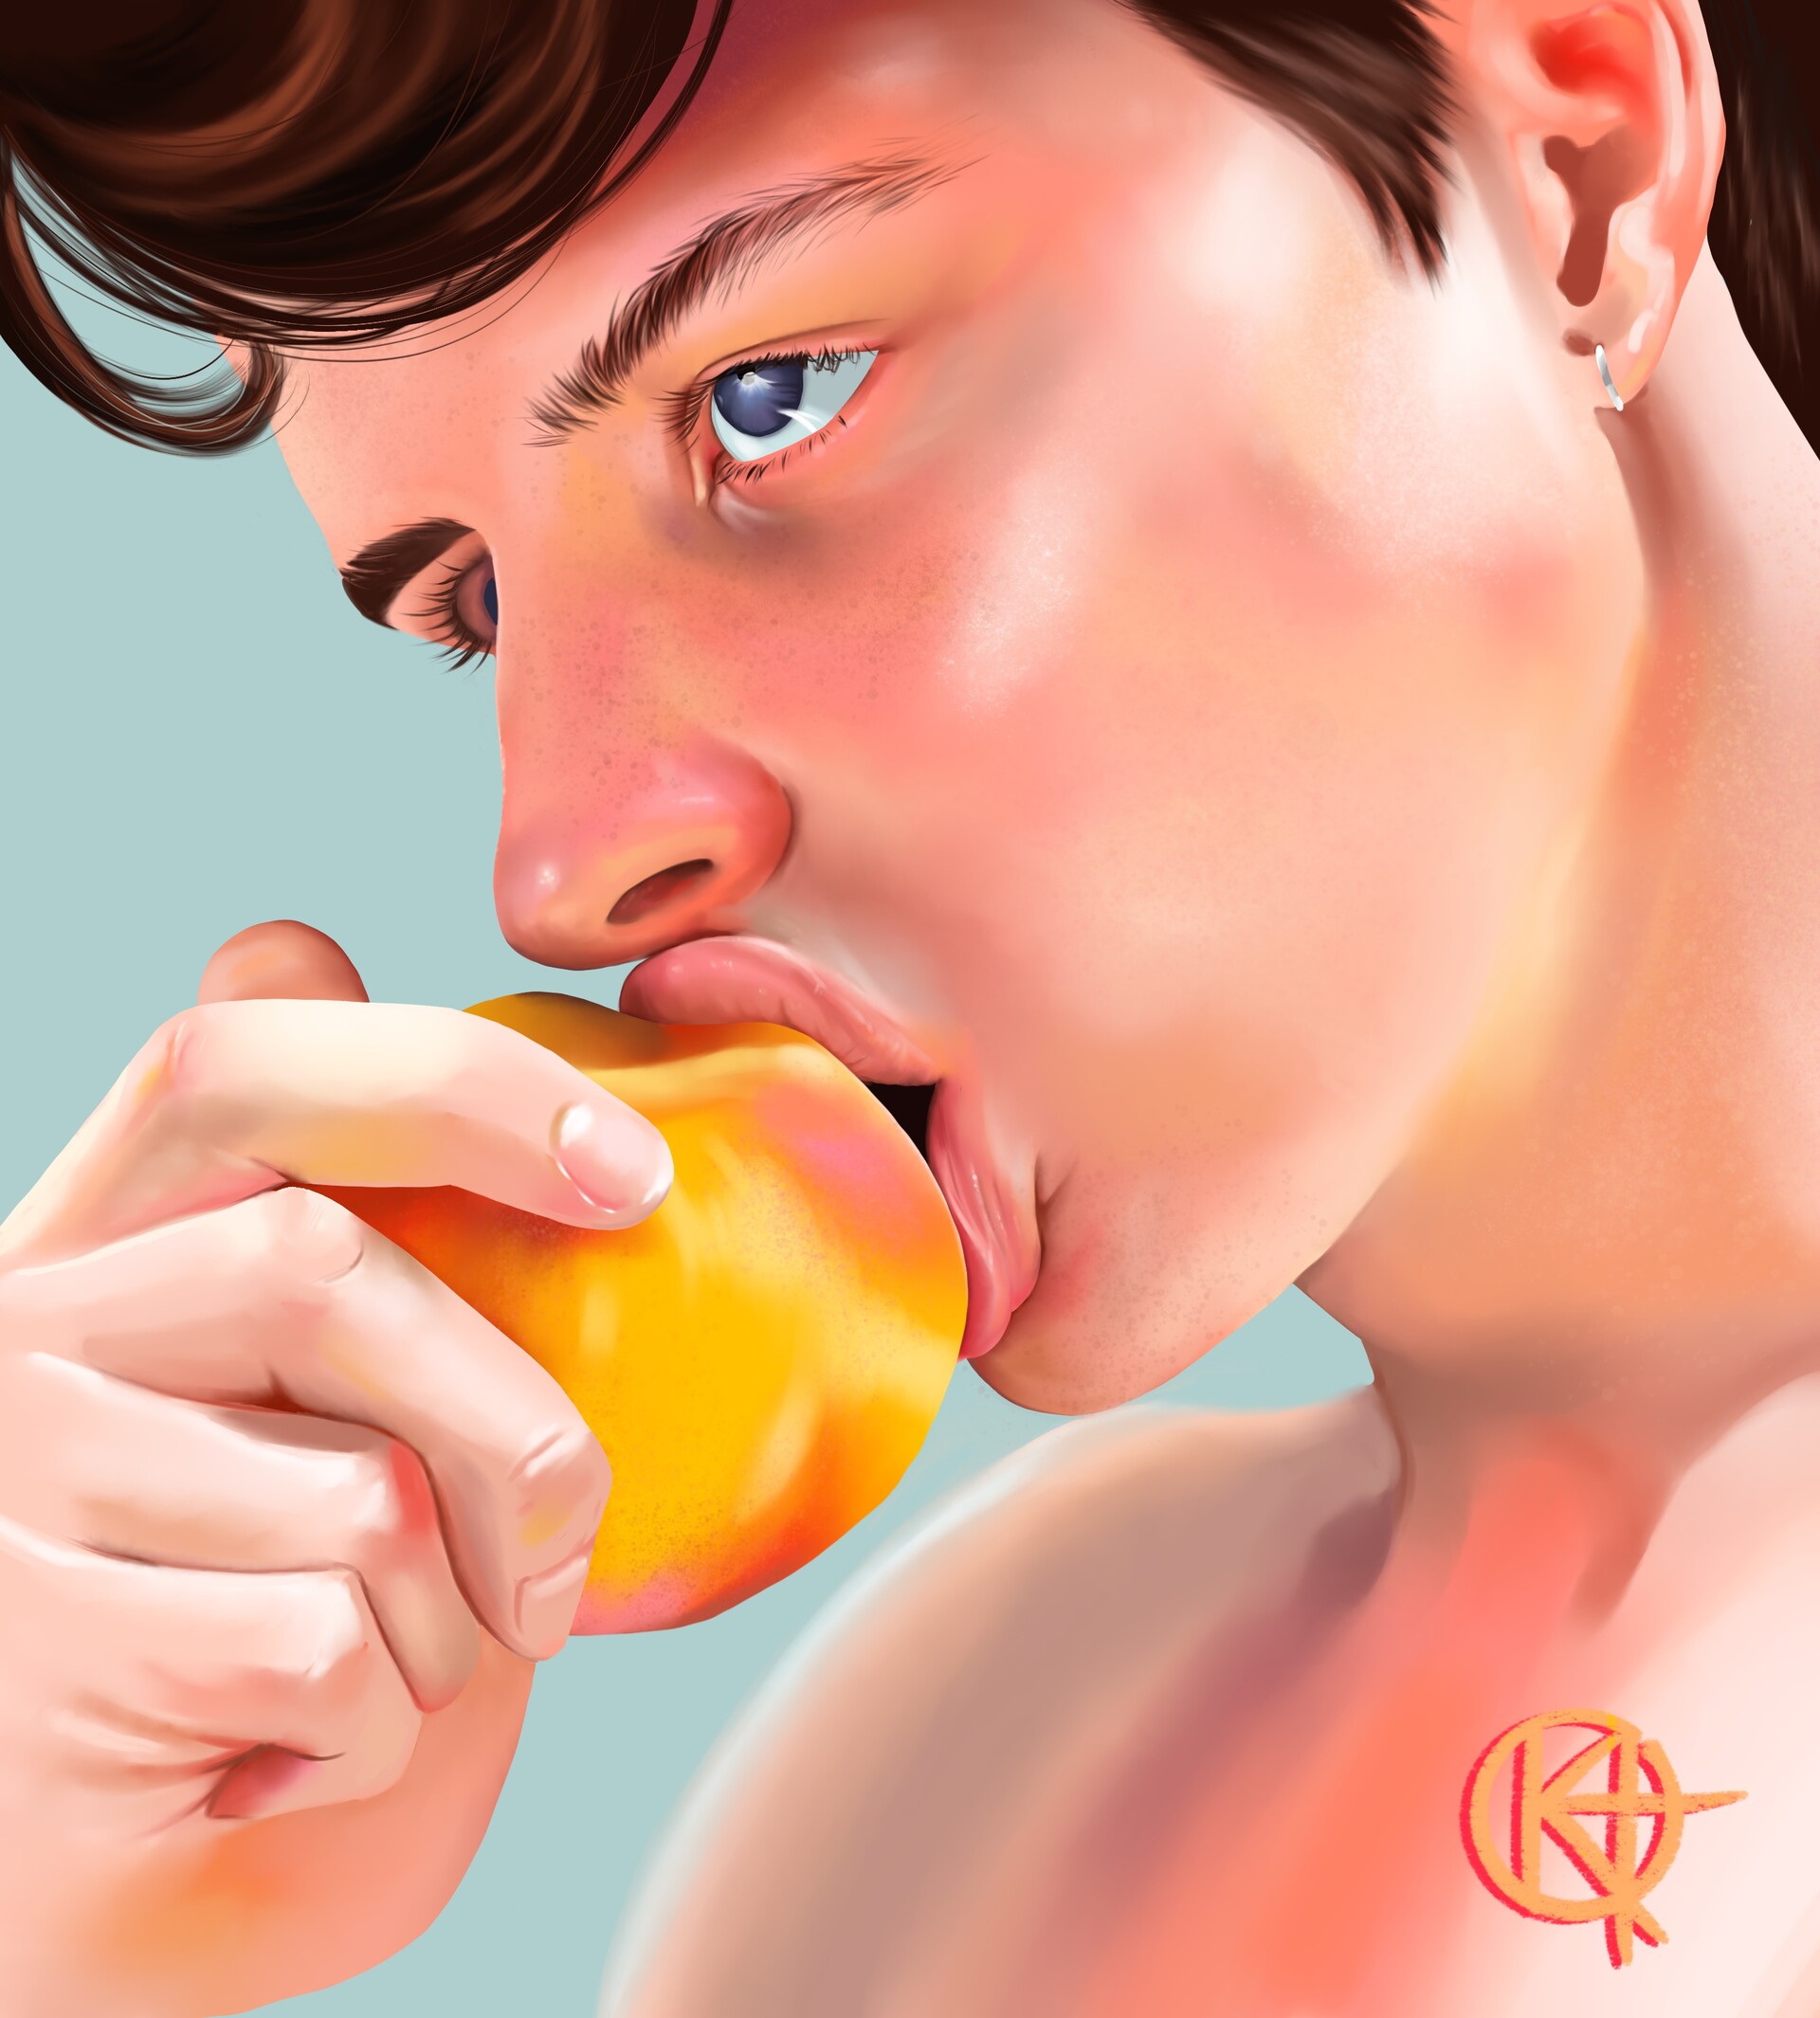 Peach boy.